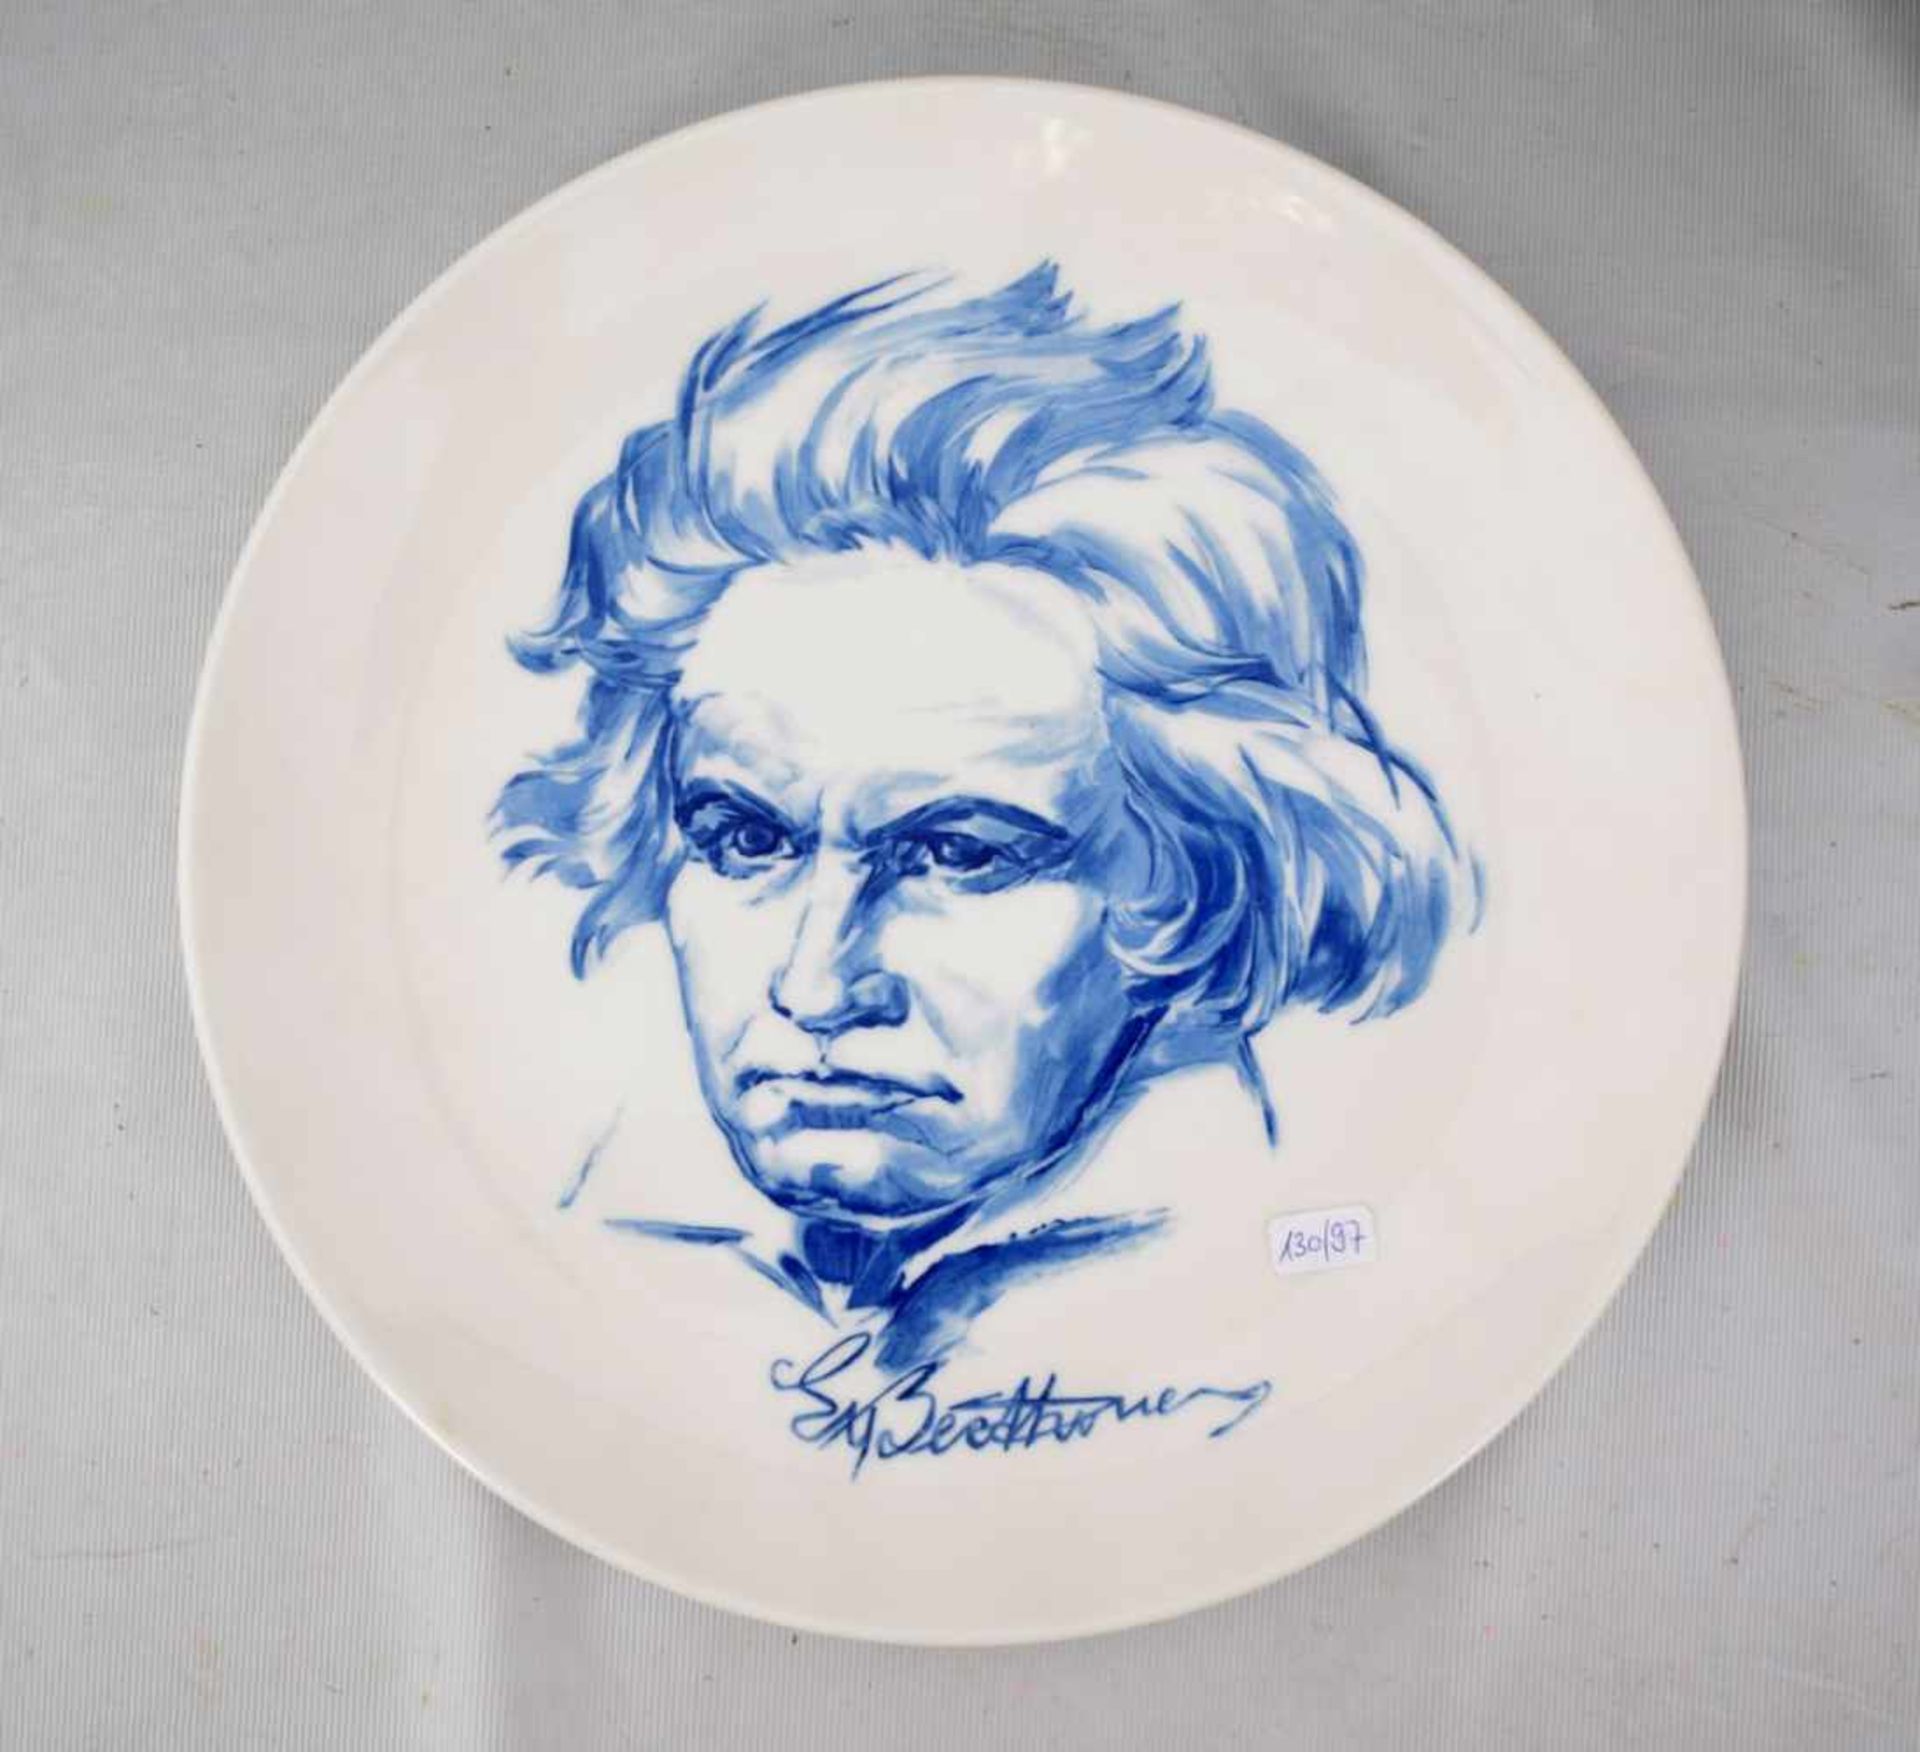 Teller rund, Spiegel mit Portrait von Ludwig van Beethoven, blau verziert, Dm 26 cm, blaue